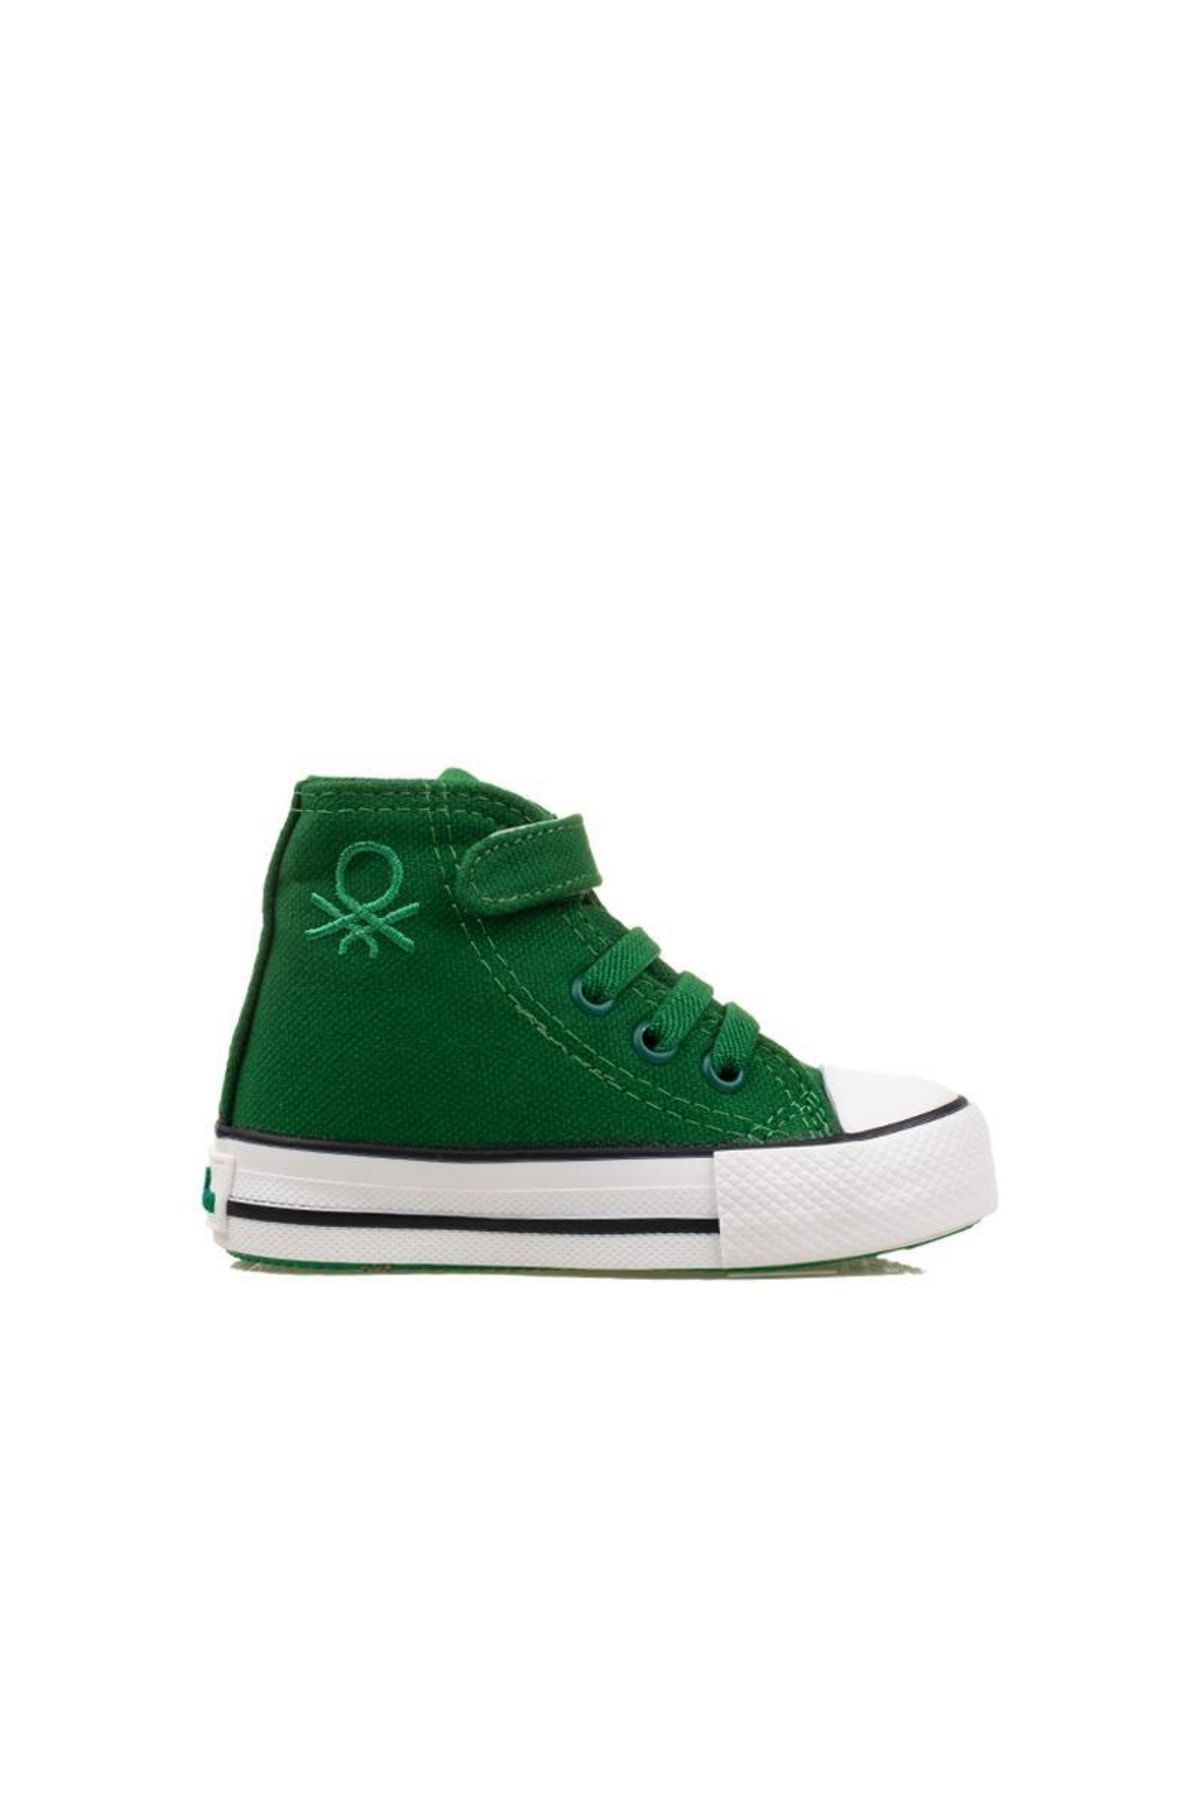 Benetton Yeşil Unisex Bebe Boğazlı Sneaker Bn 30817